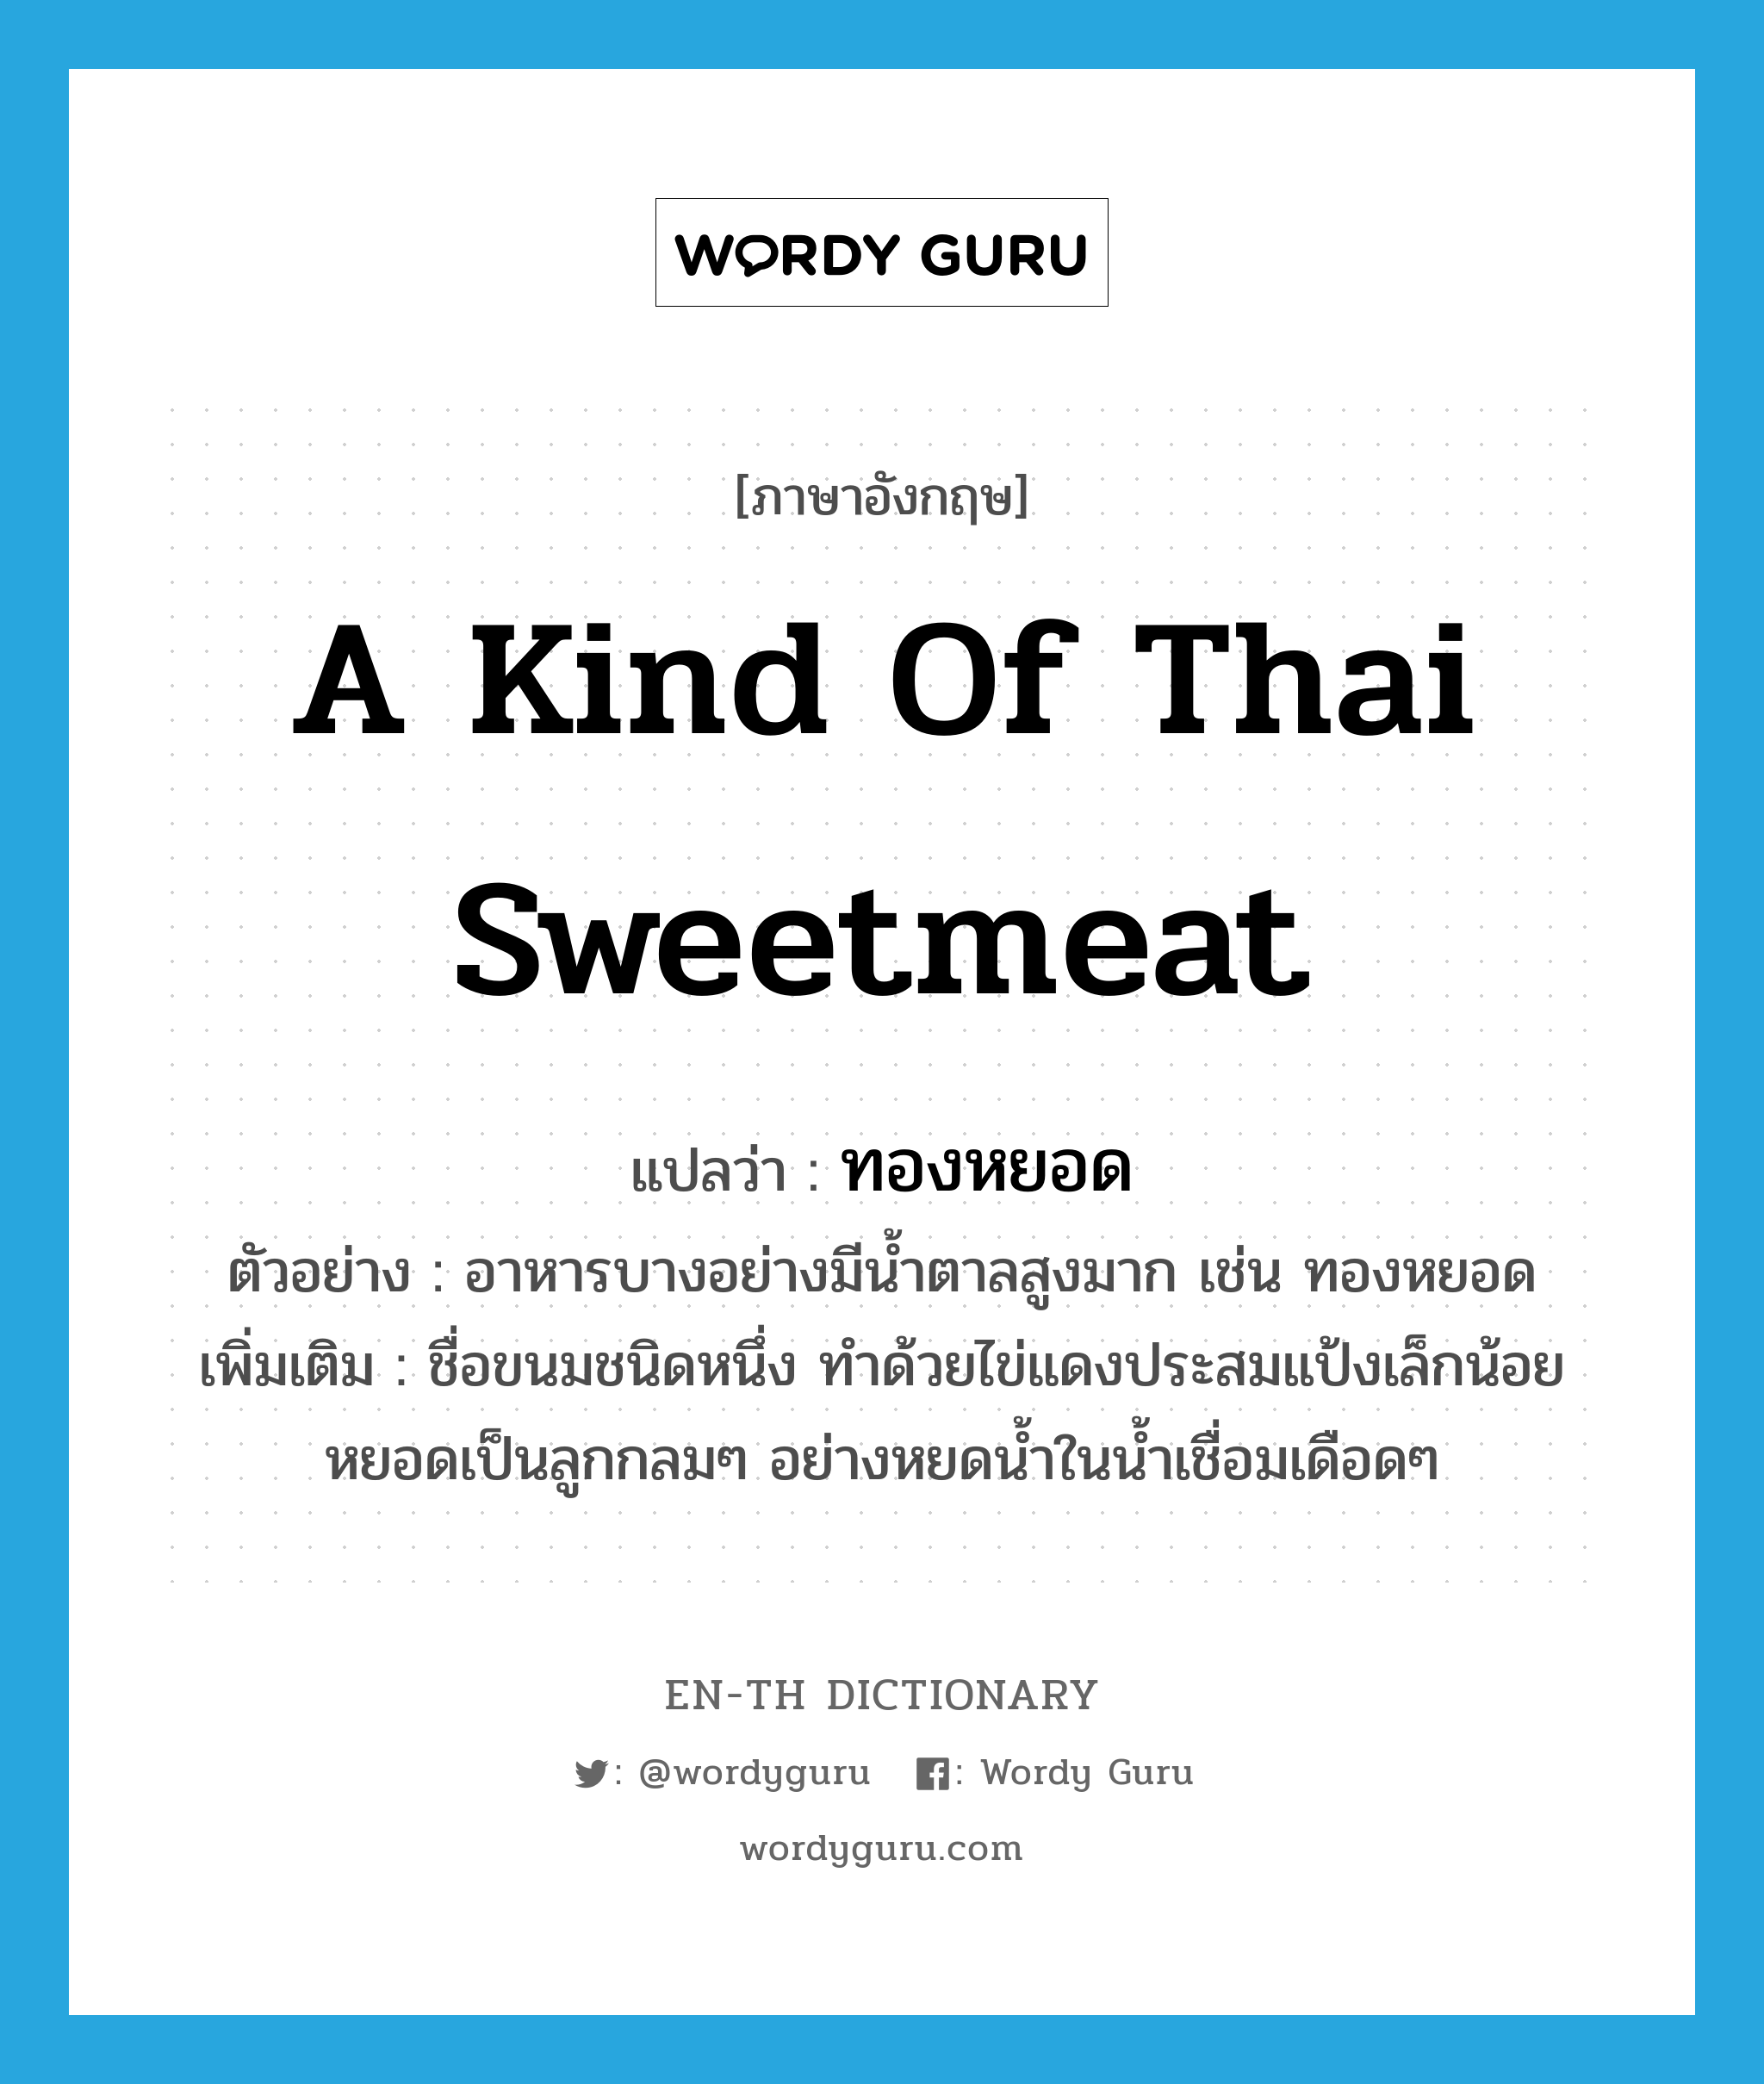 ทองหยอด ภาษาอังกฤษ?, คำศัพท์ภาษาอังกฤษ ทองหยอด แปลว่า a kind of Thai sweetmeat ประเภท N ตัวอย่าง อาหารบางอย่างมีน้ำตาลสูงมาก เช่น ทองหยอด เพิ่มเติม ชื่อขนมชนิดหนึ่ง ทำด้วยไข่แดงประสมแป้งเล็กน้อย หยอดเป็นลูกกลมๆ อย่างหยดน้ำในน้ำเชื่อมเดือดๆ หมวด N